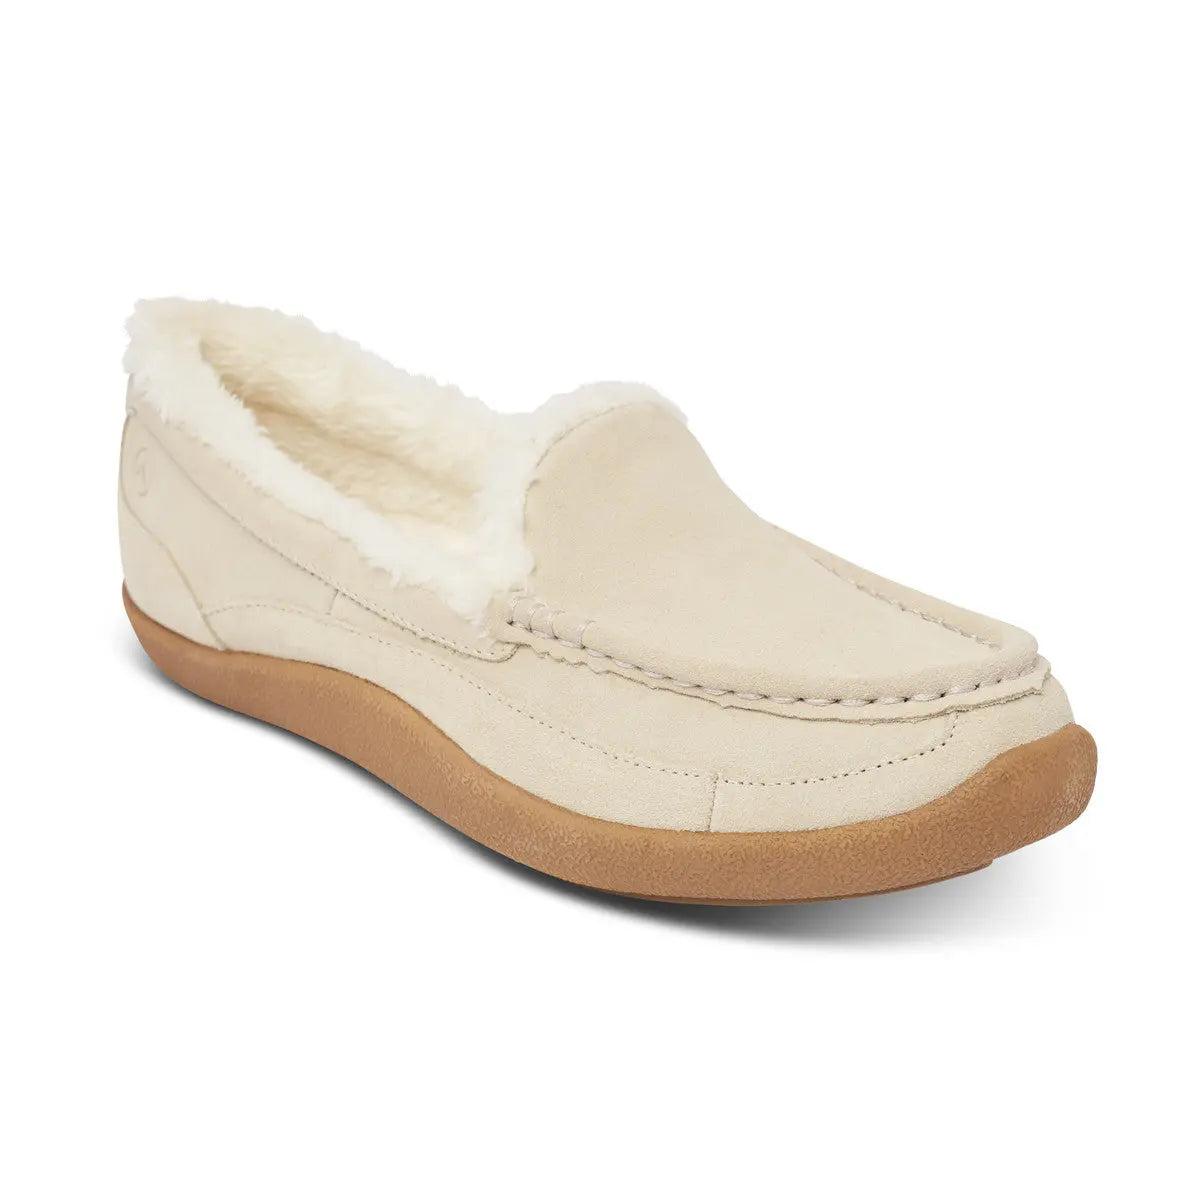 Buy Comfortable slippers for women | Fancy slippers for women – OrthoJoy